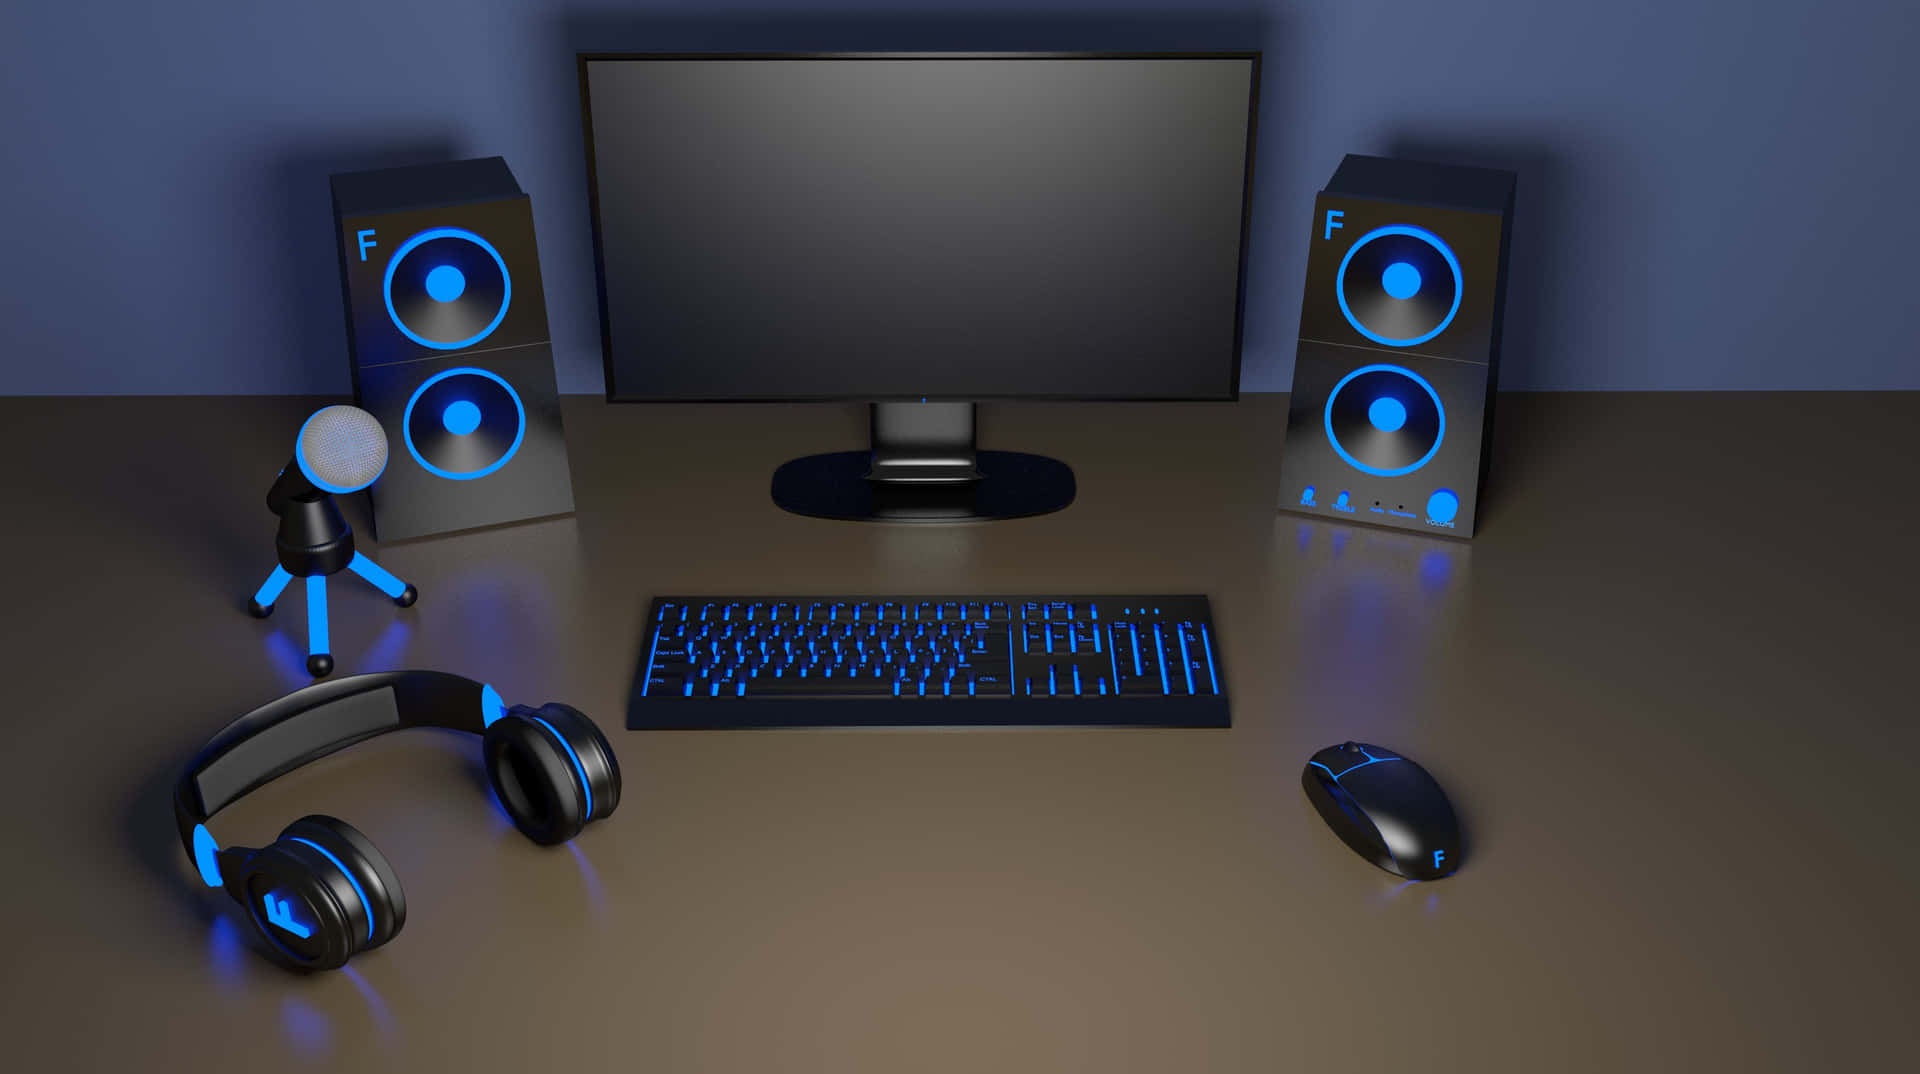 Schwarzesund Blaues Gaming-setup-bild